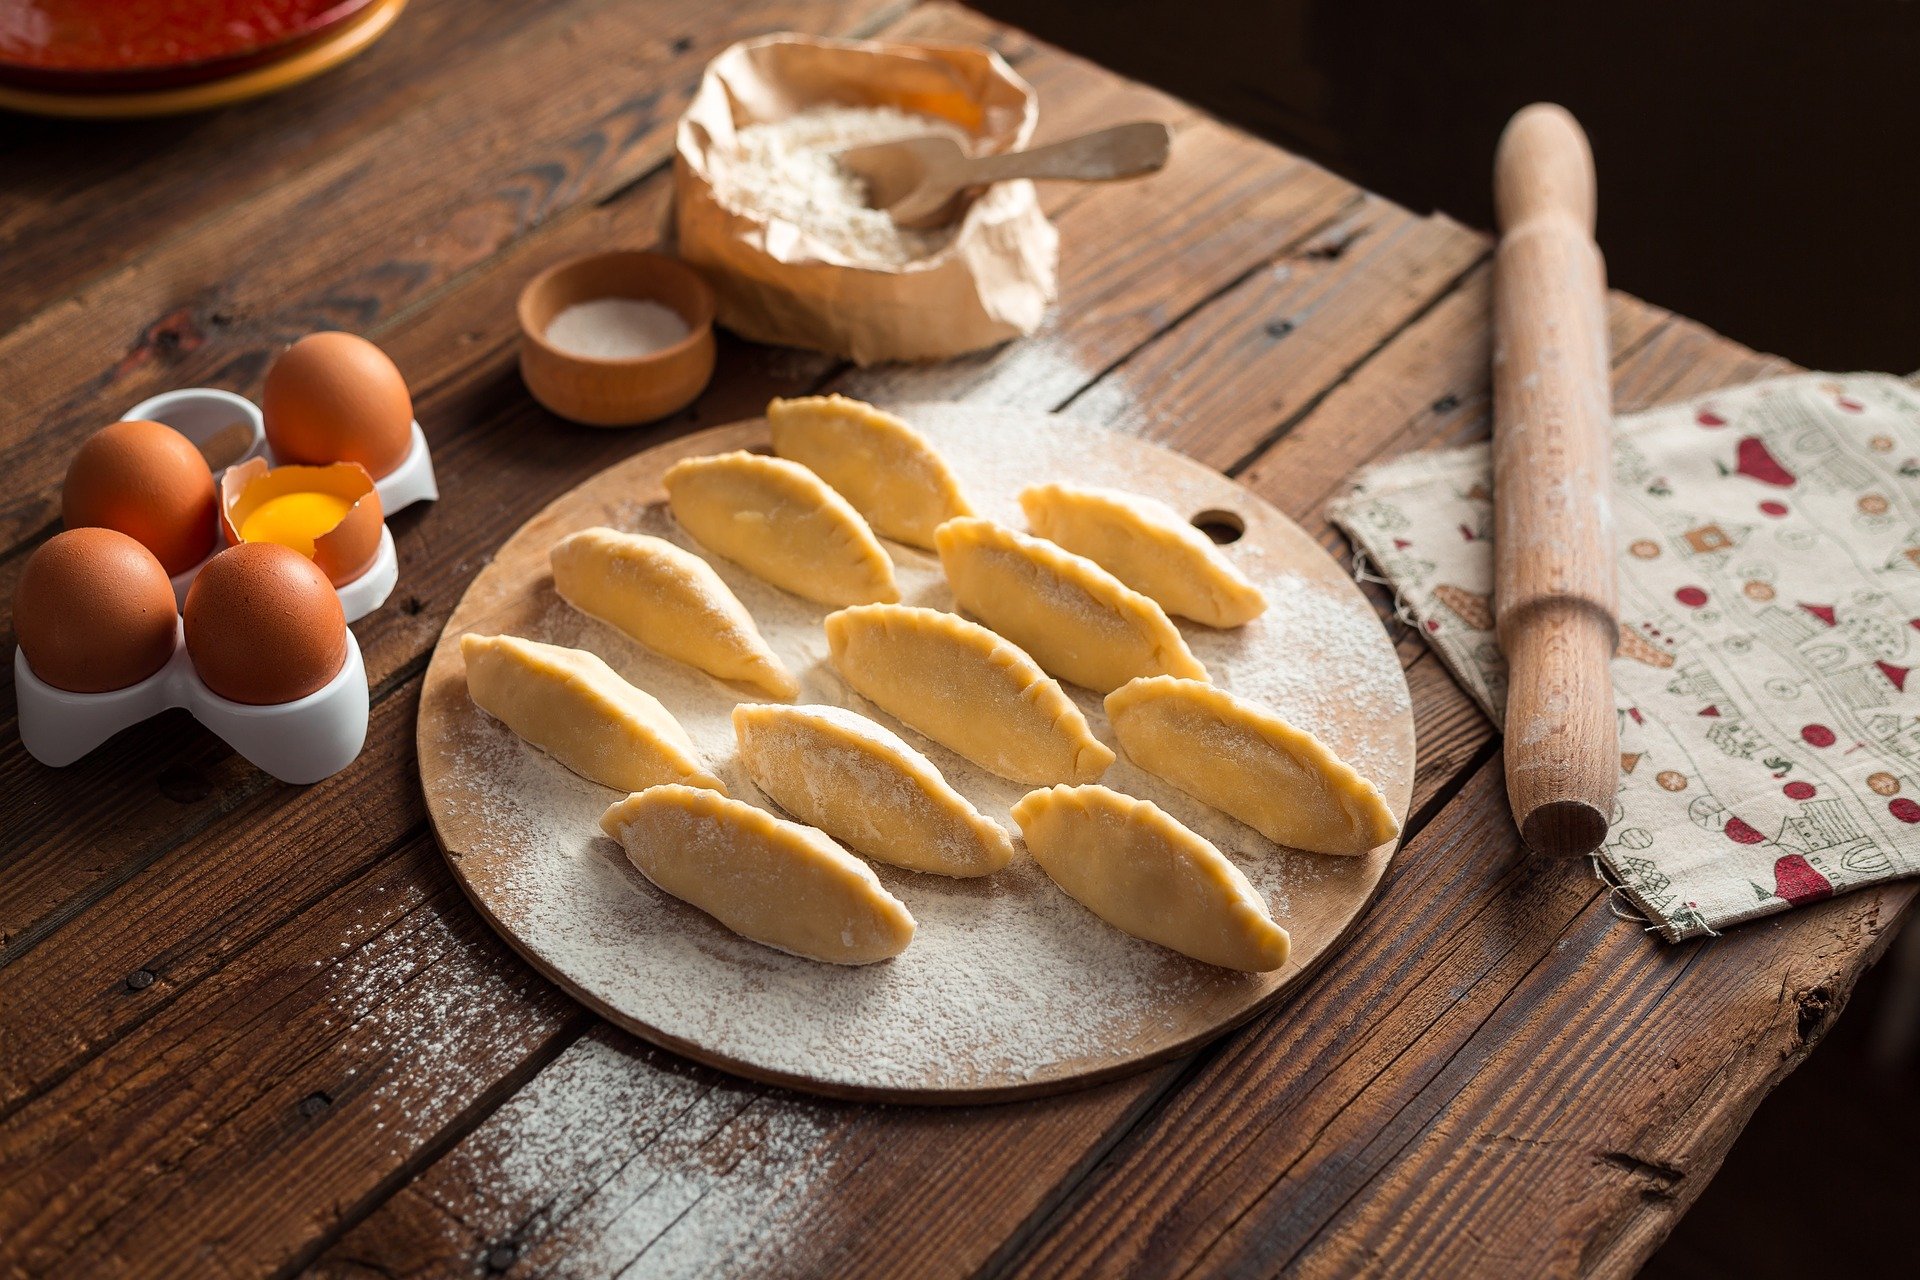 Фестиваль «Московская Масленница» проведет кулинарные и творческие мастер-классы. Фото: pixabay